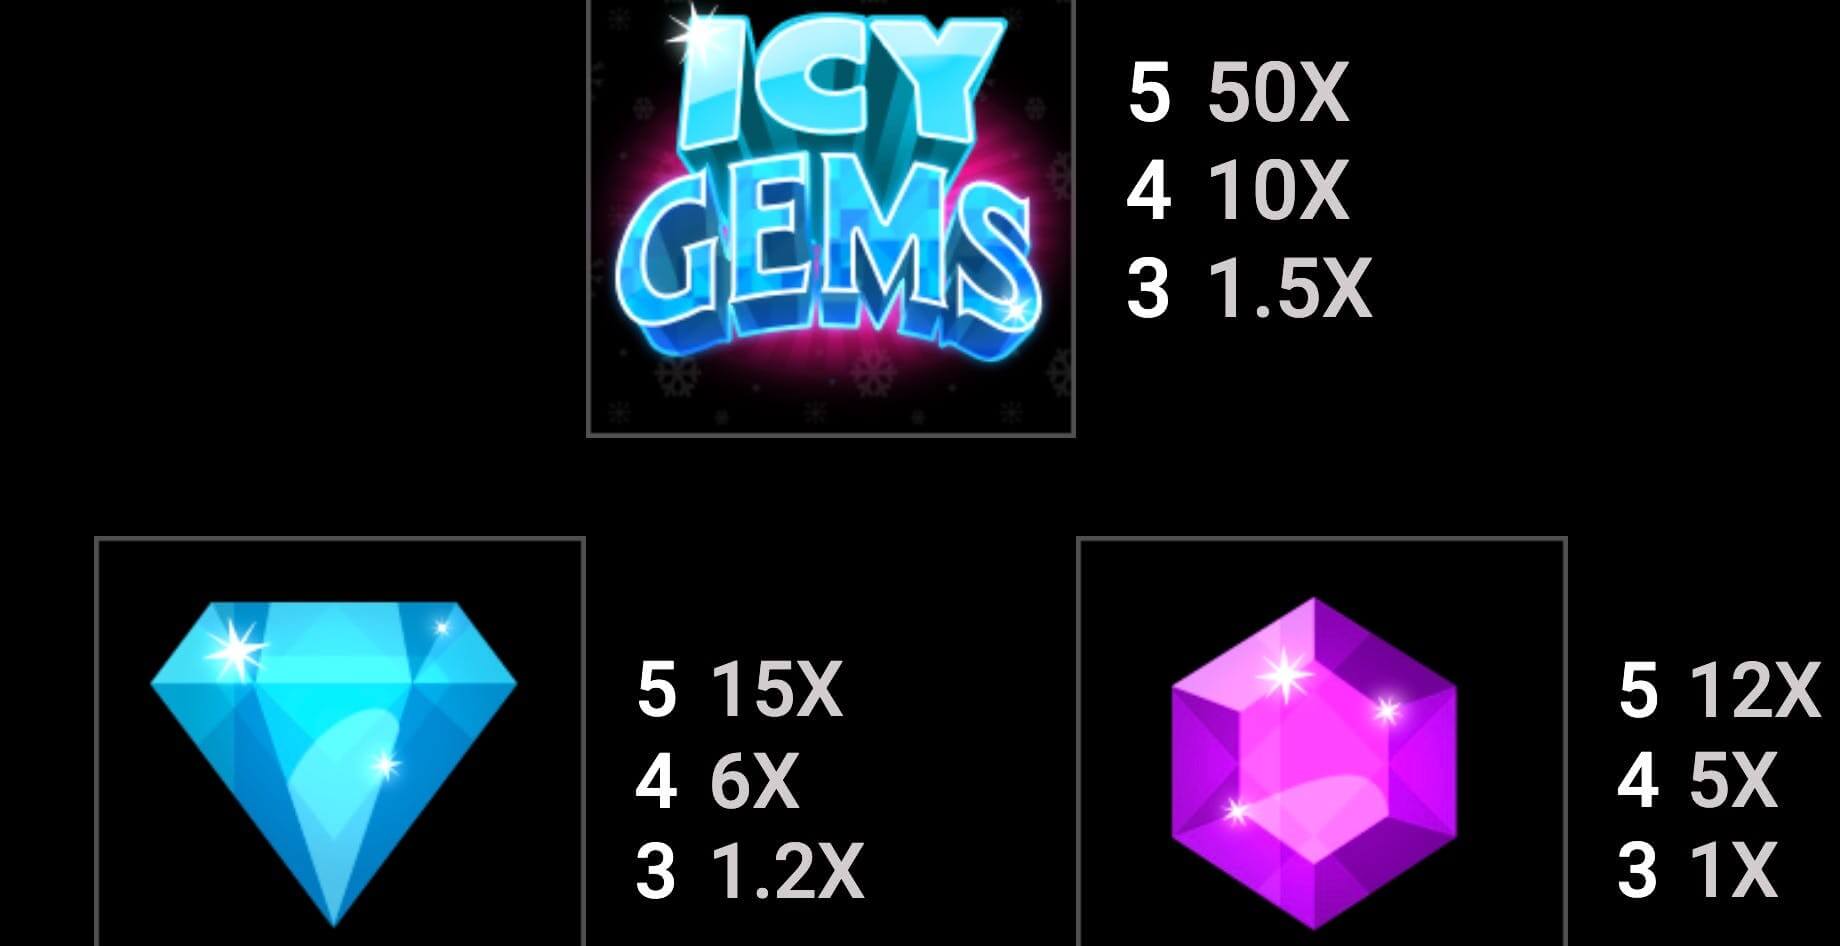 Icy gems